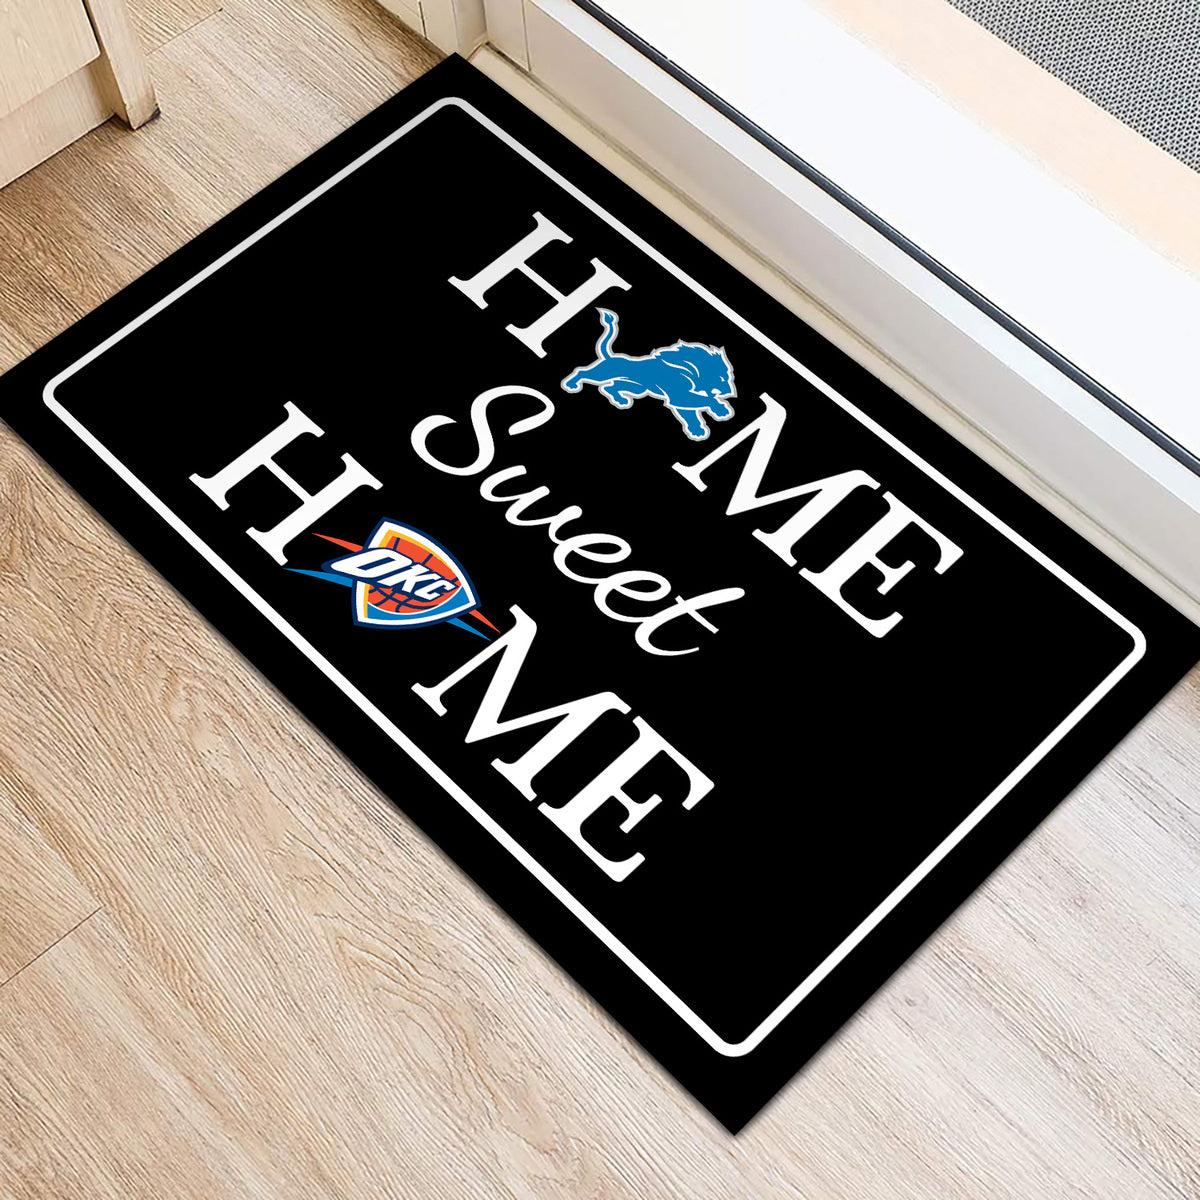 Home Sweet Home Doormat - Customized Doormat For Thomas H. Keller - Anti Slip Indoor Doormat